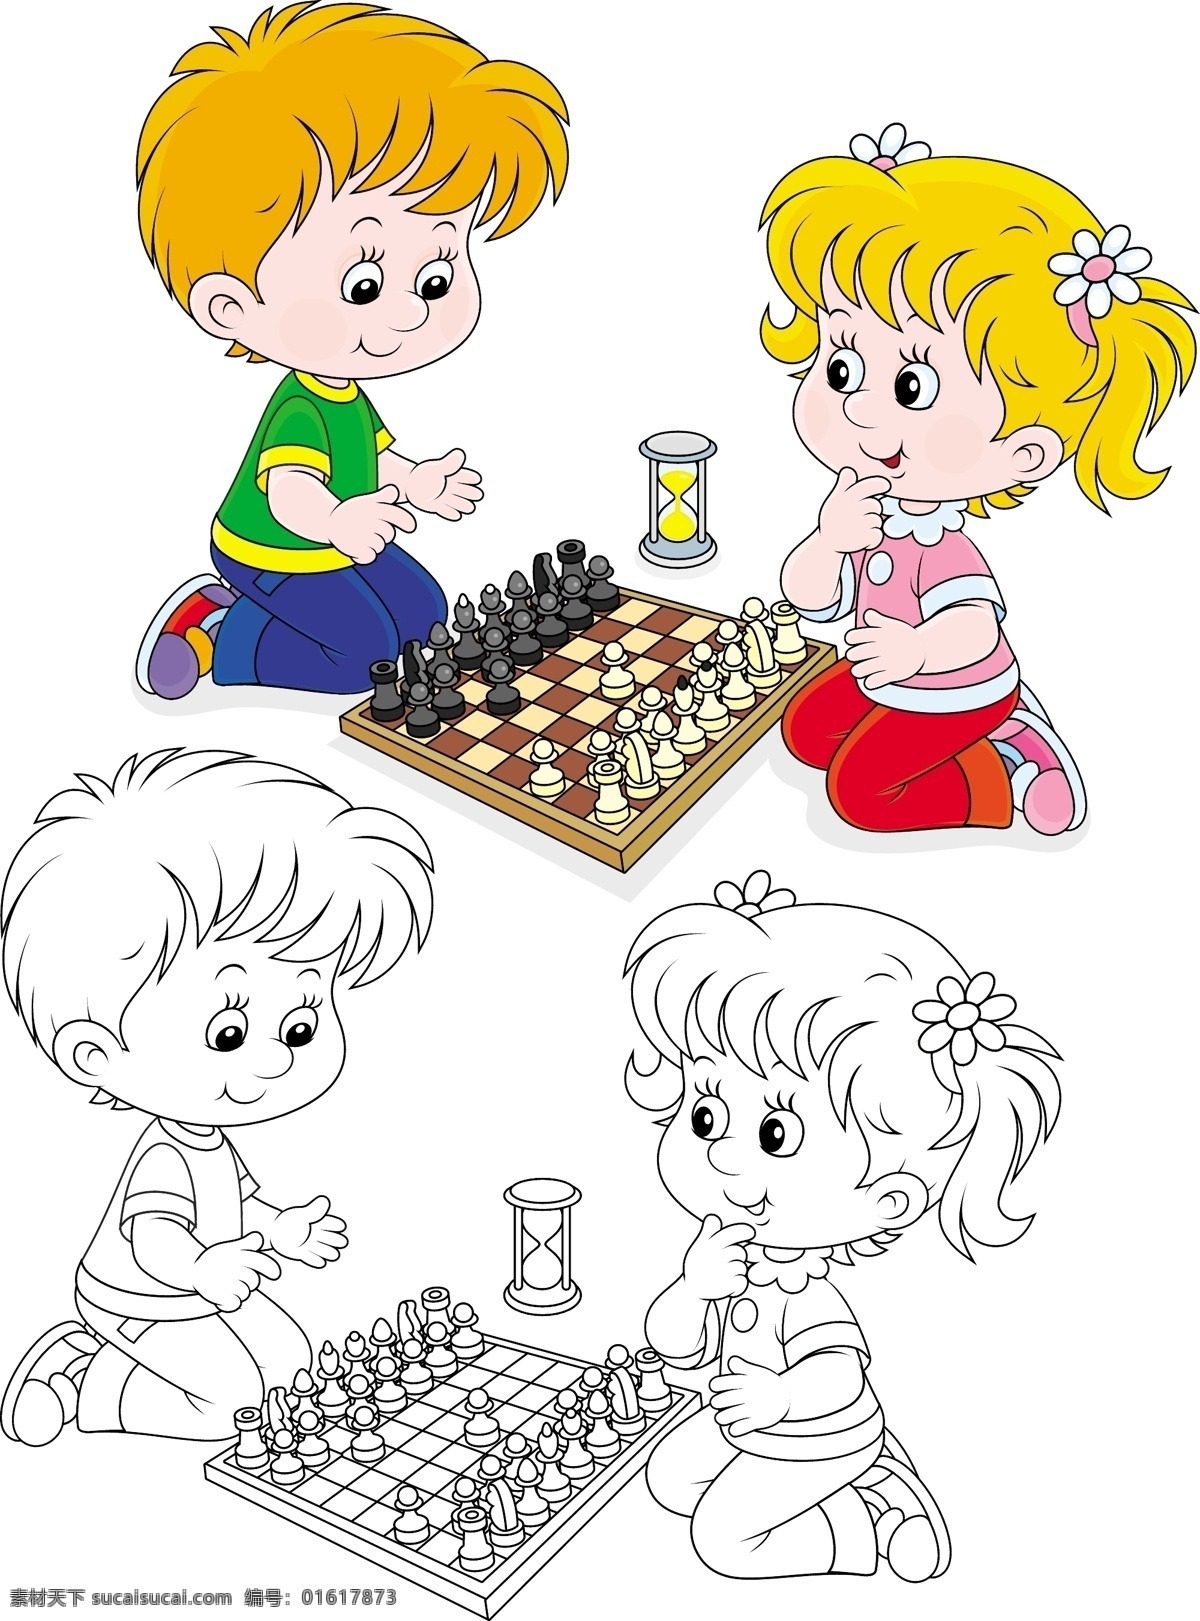 下 国际象棋 男孩 女孩 卡通画 棋类运动 男孩女孩 儿童 人物 沙漏 卡通形象 矢量人物 矢量素材 白色